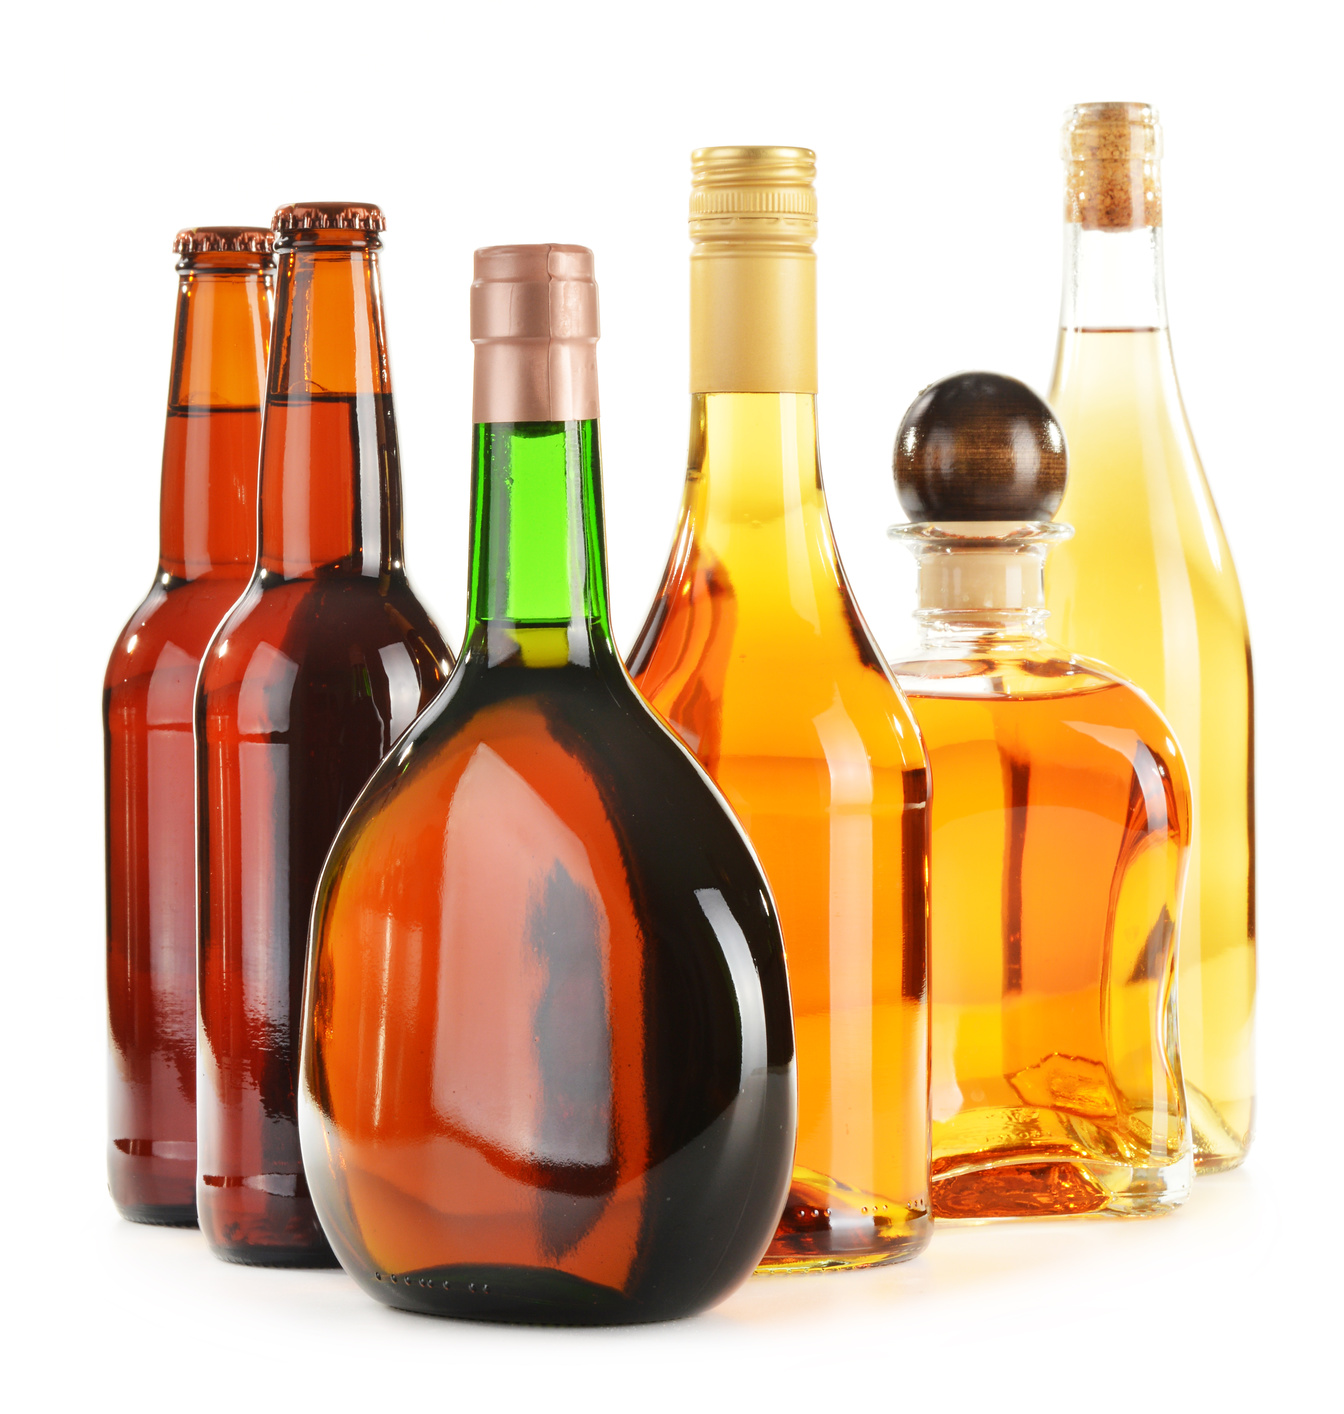 Alcohol harm hotspots concerns